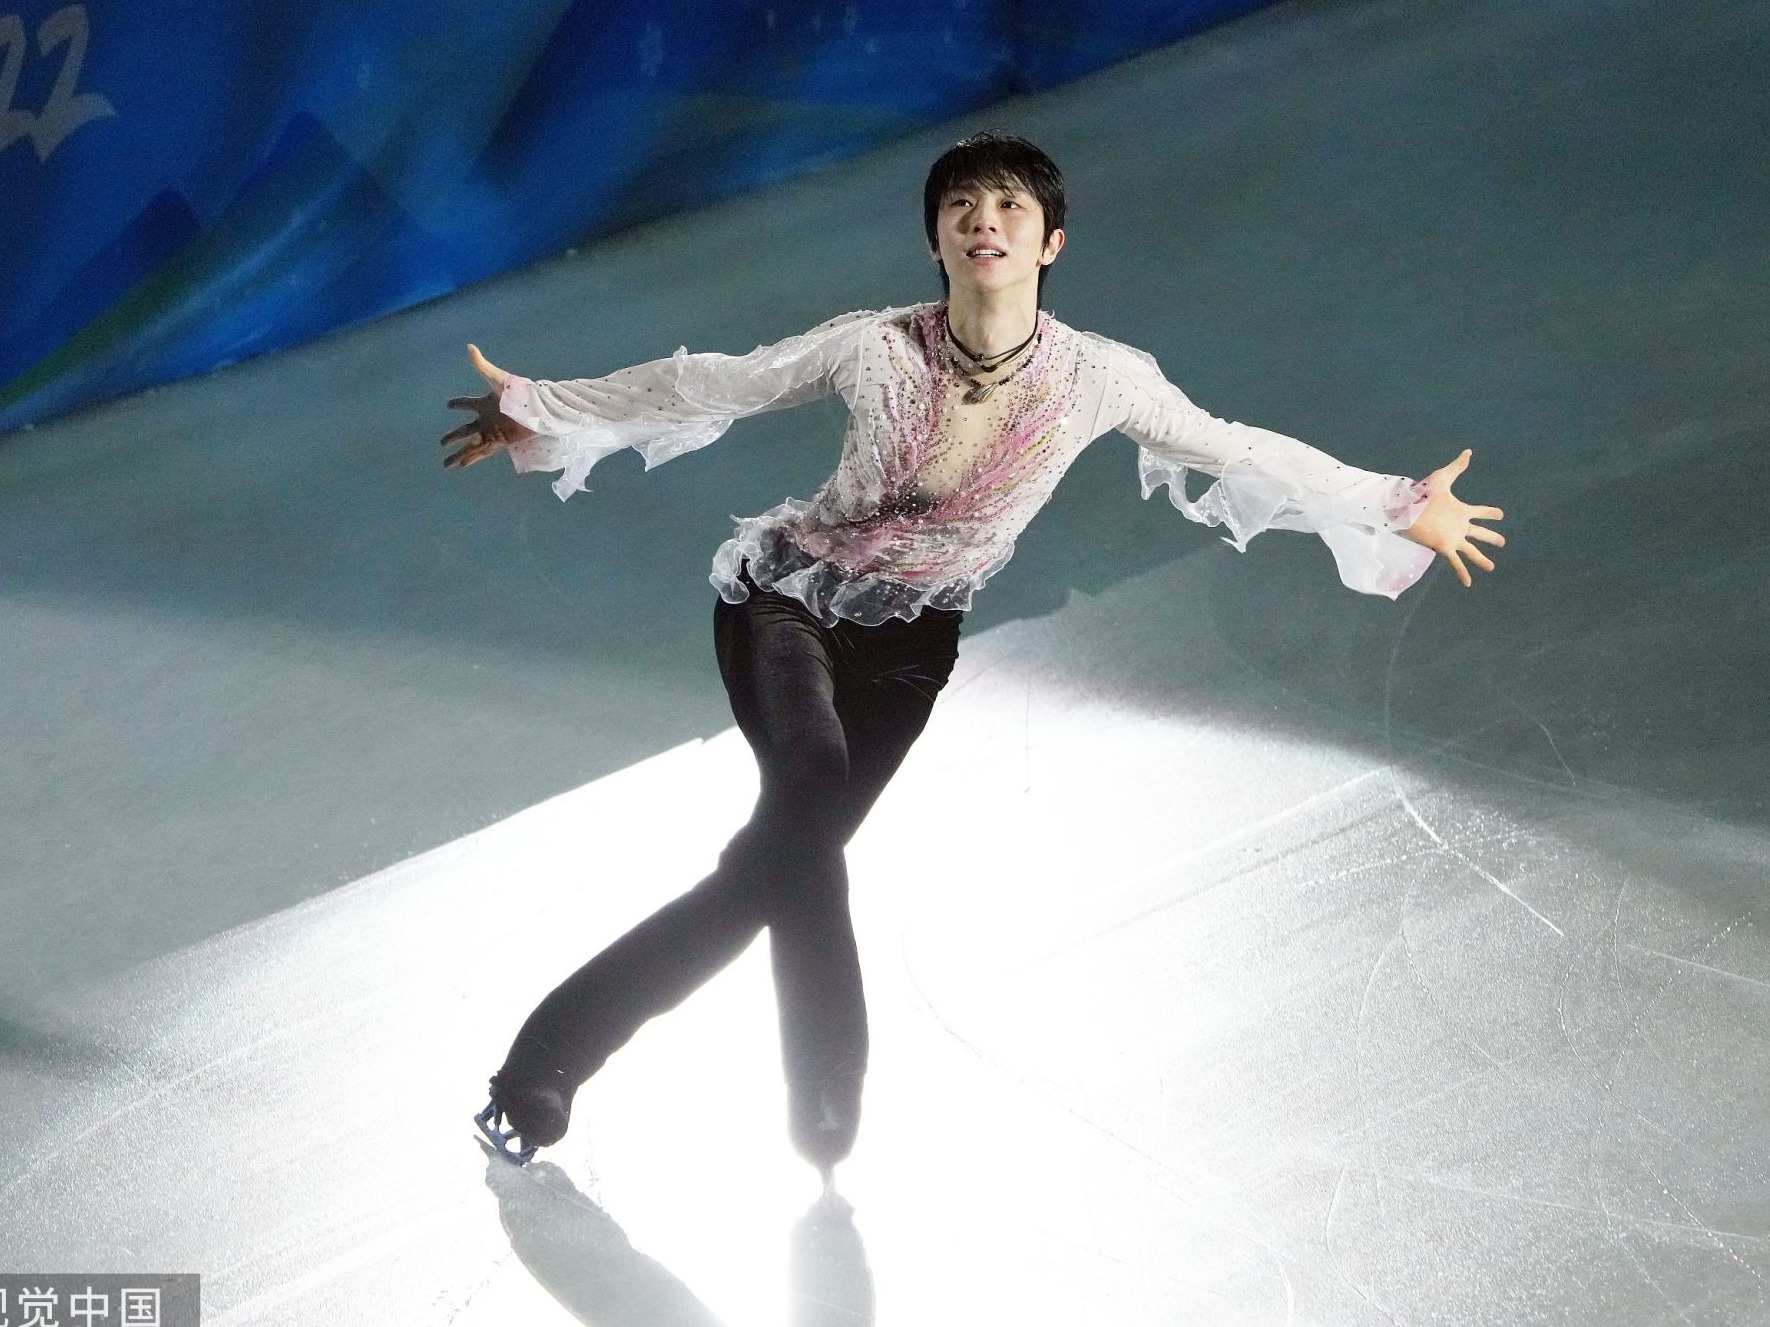 羽生结弦表态“想参加2030札幌冬奥会”，届时他将35岁